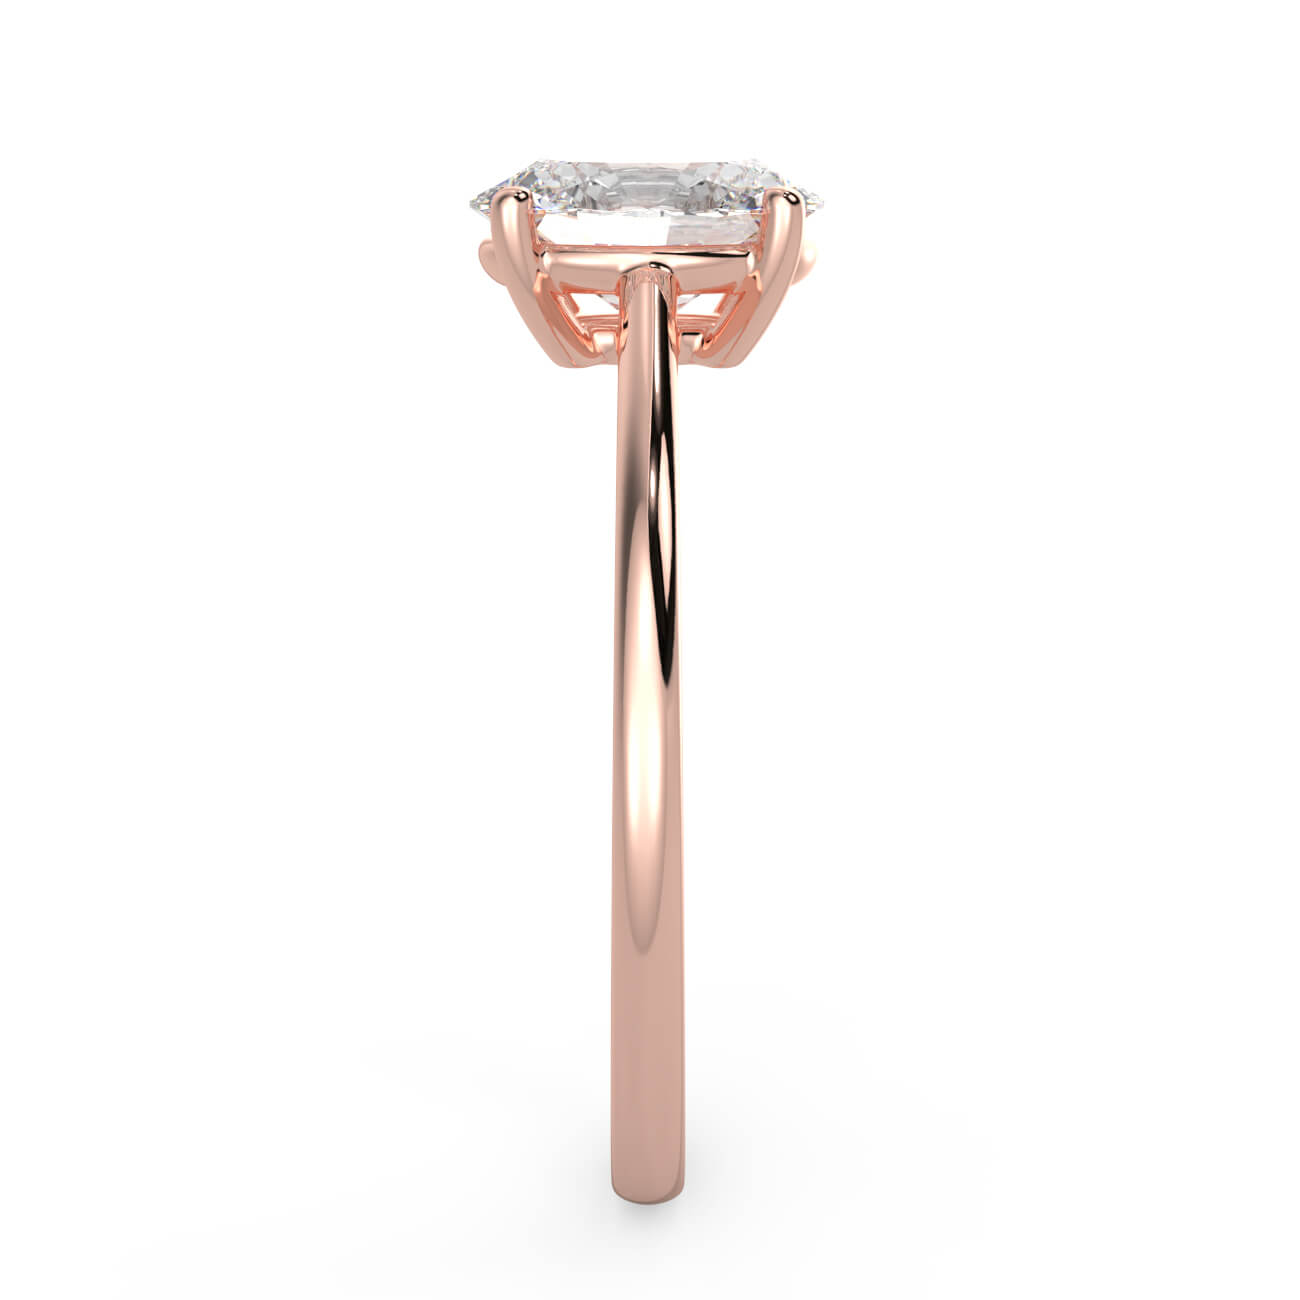 Slim Band Oval Diamond Ring In 18k Rose Gold – Australian Diamond Network